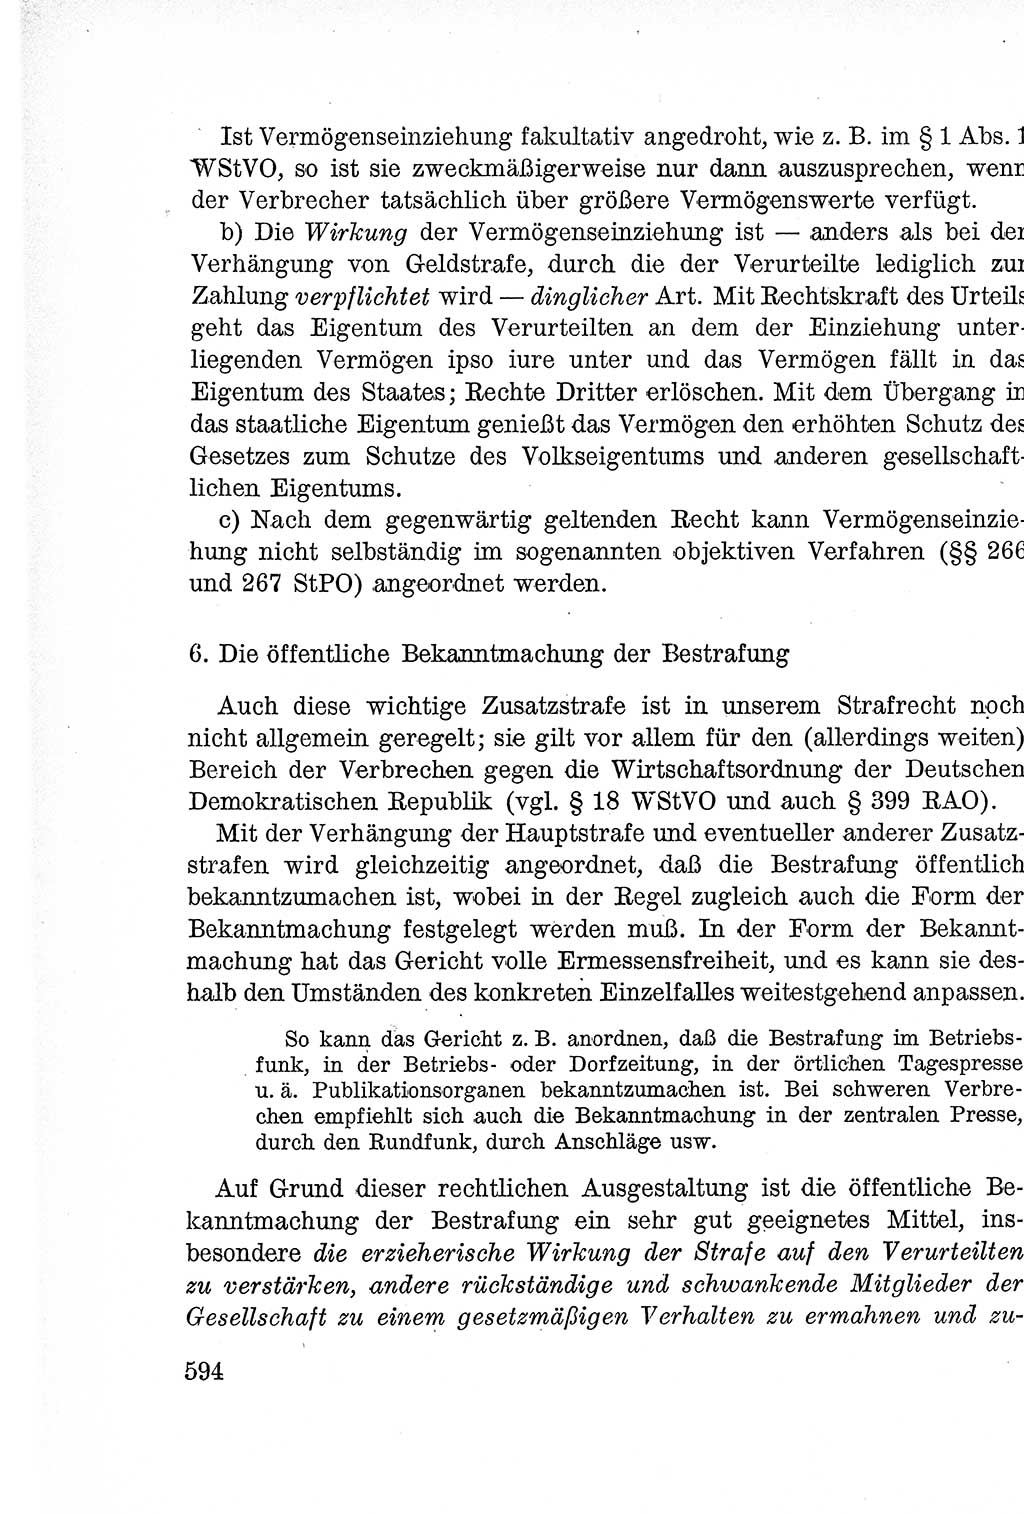 Lehrbuch des Strafrechts der Deutschen Demokratischen Republik (DDR), Allgemeiner Teil 1957, Seite 594 (Lb. Strafr. DDR AT 1957, S. 594)